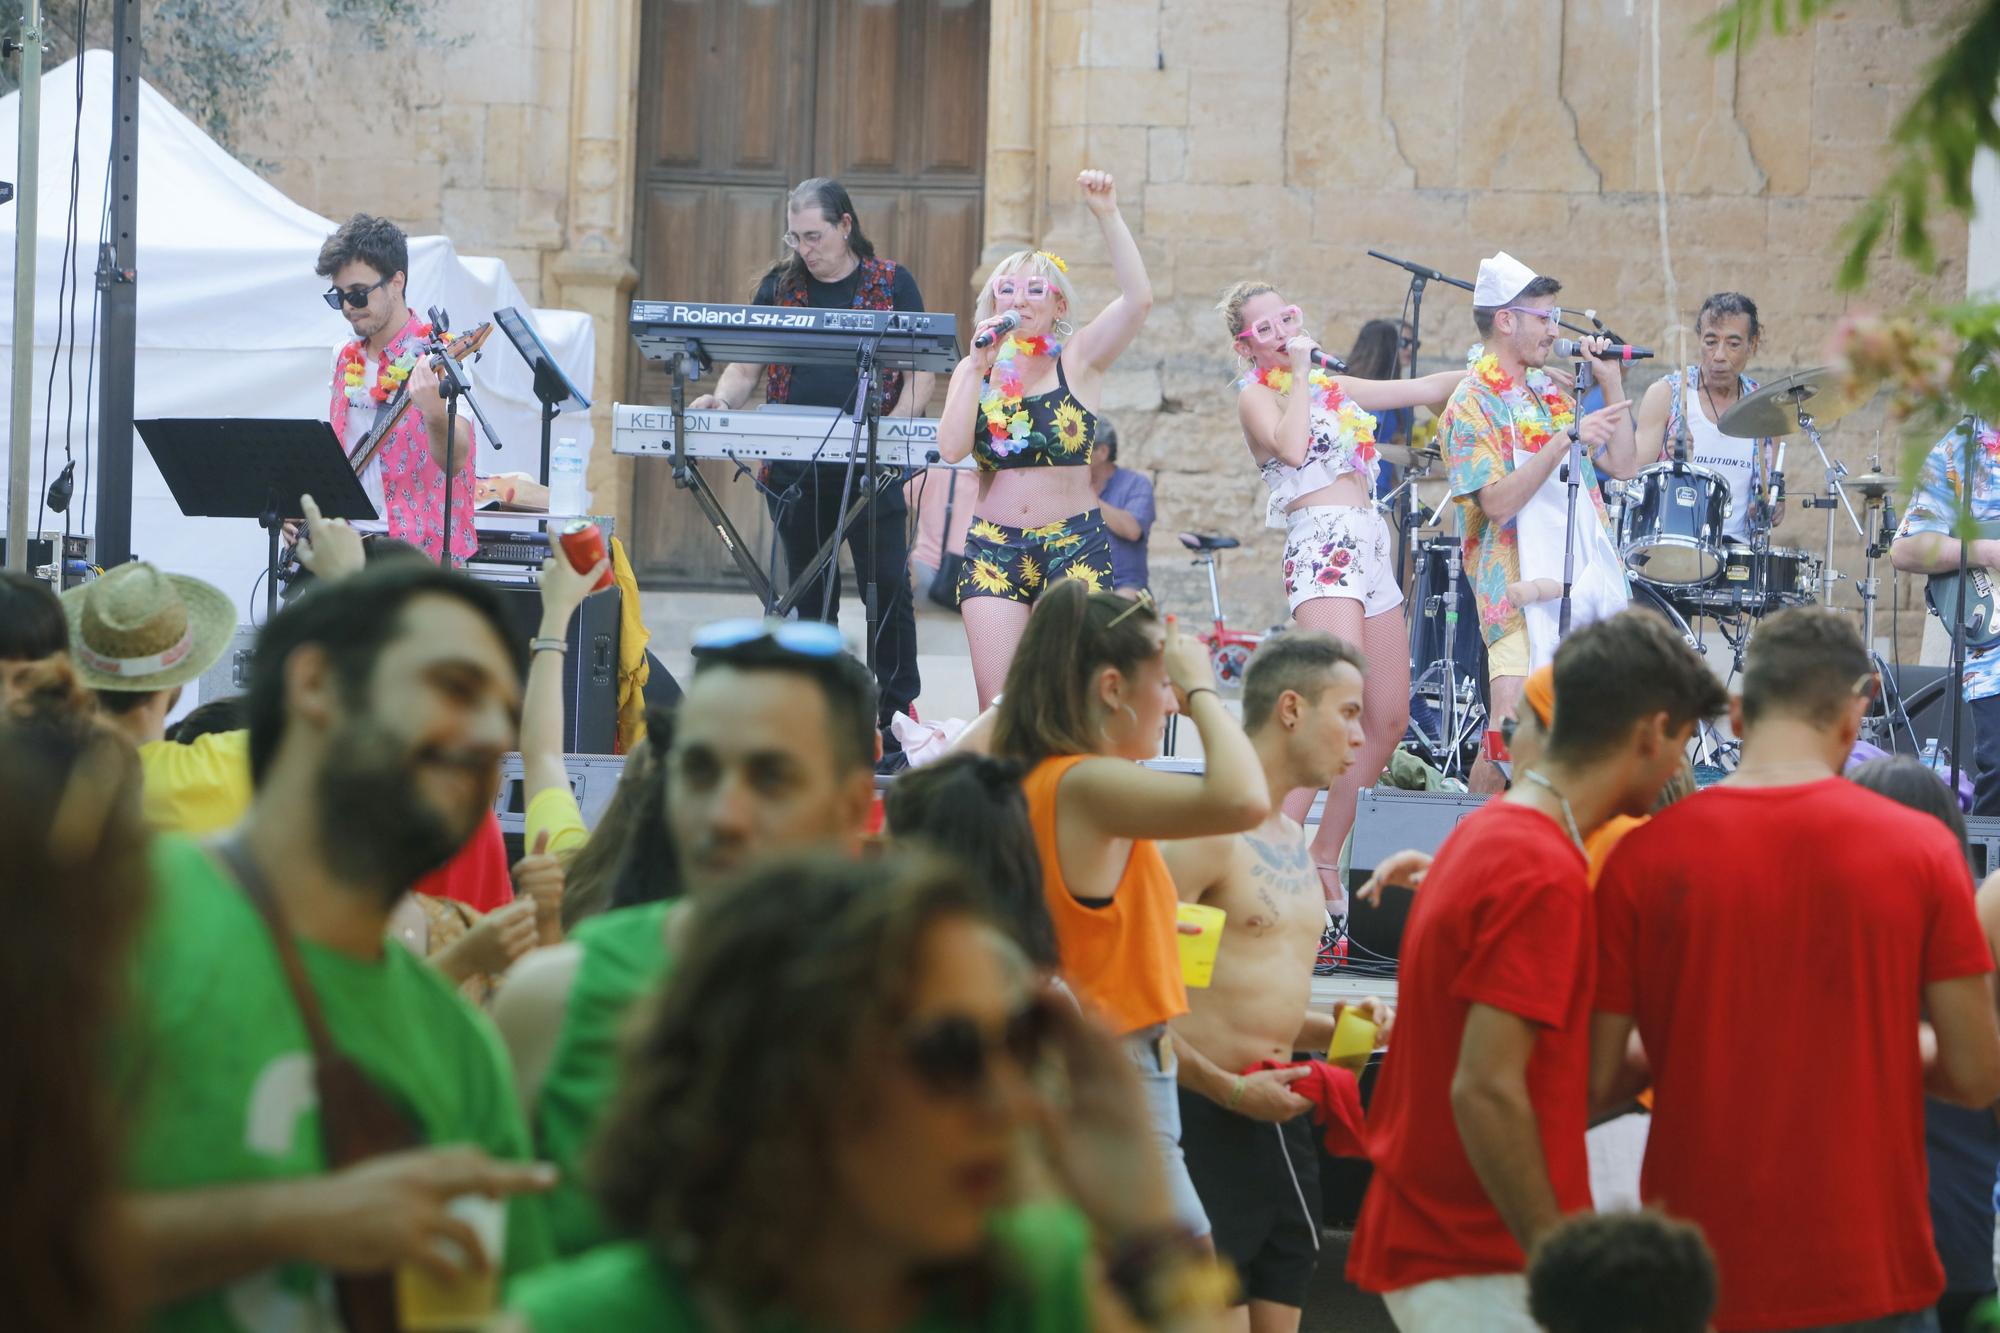 Schöner Brauch: So machen auf Mallorca mehrere Generationen gemeinsam Party